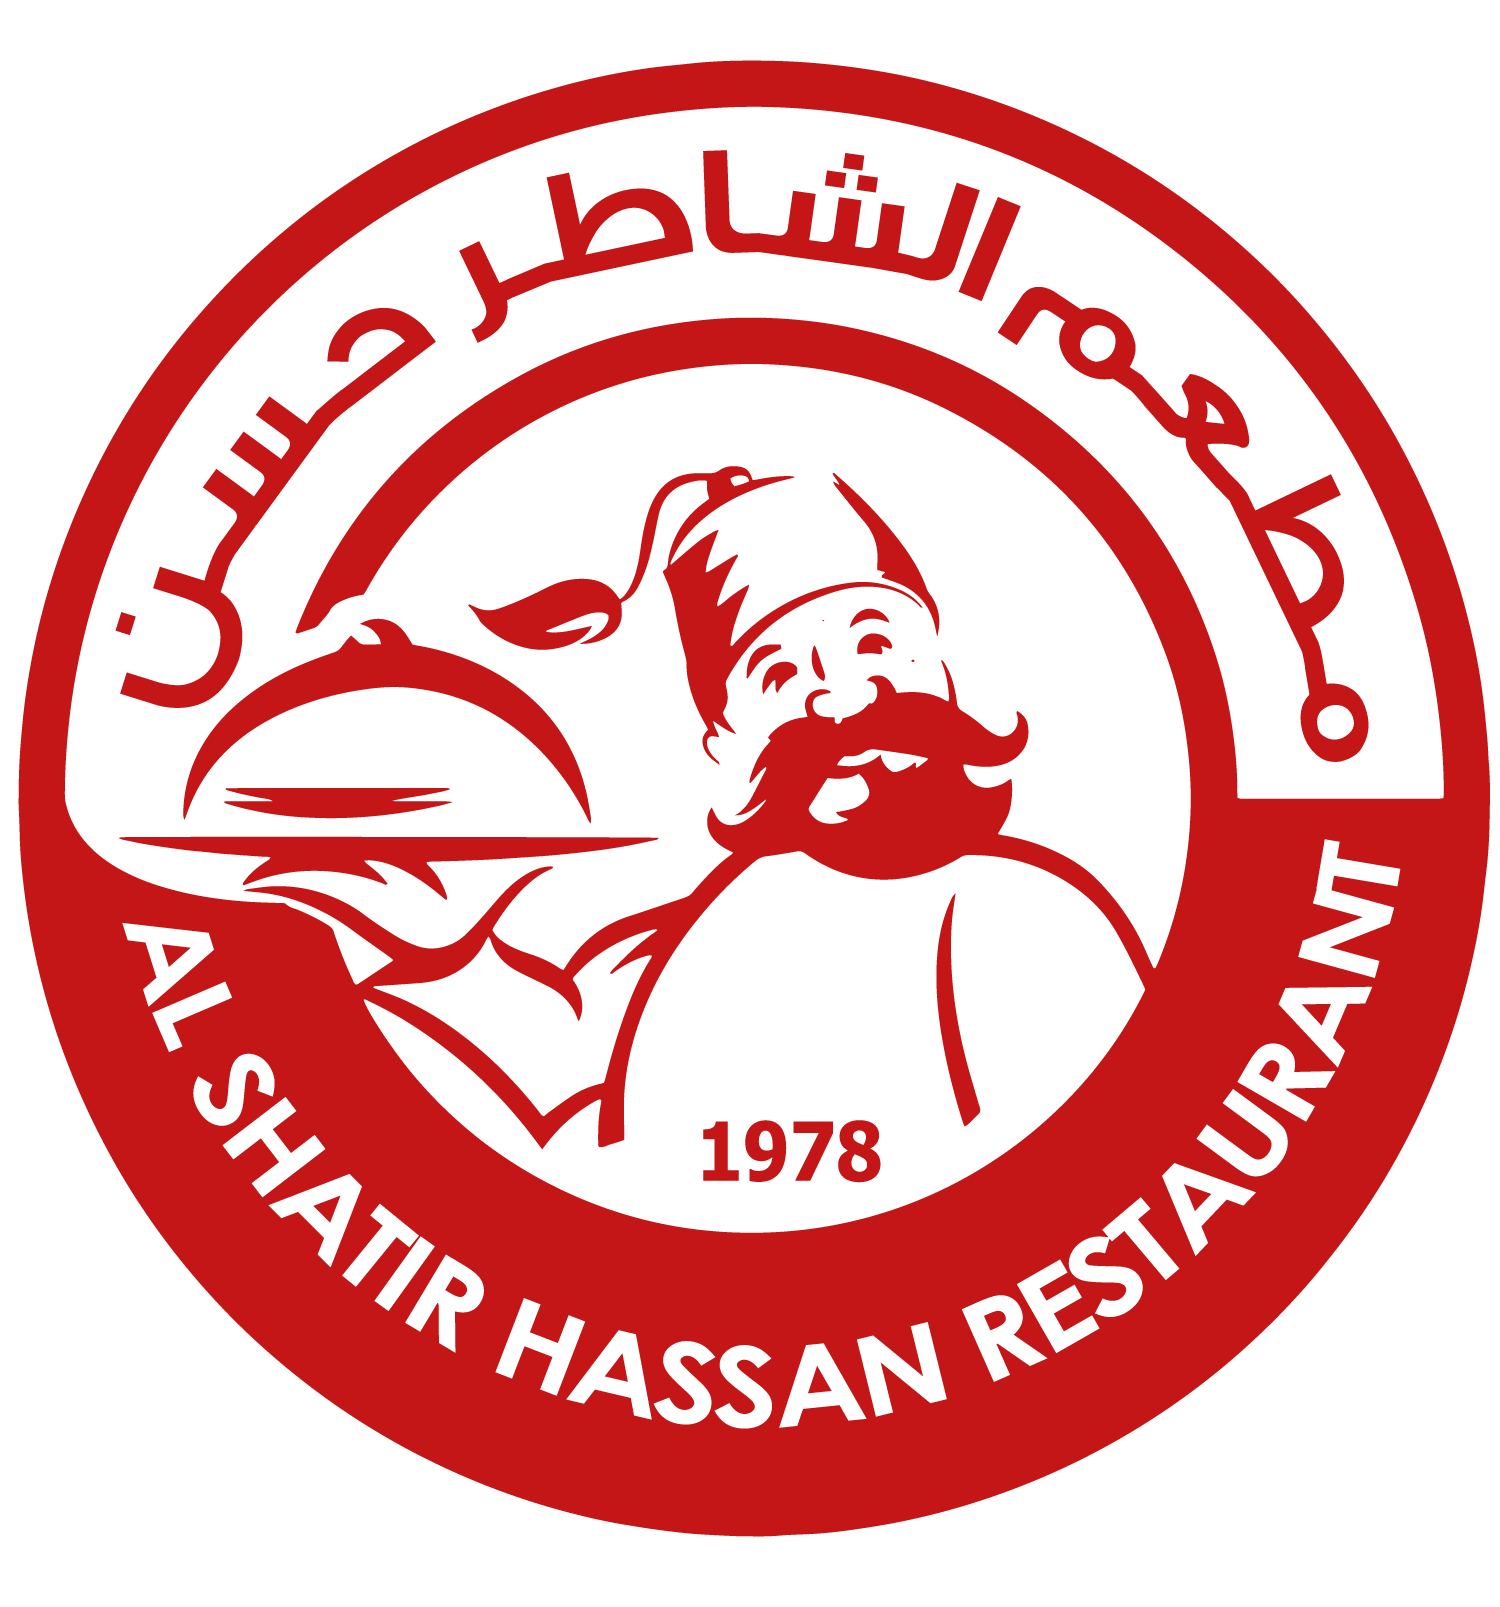 Al Shatter Hassan